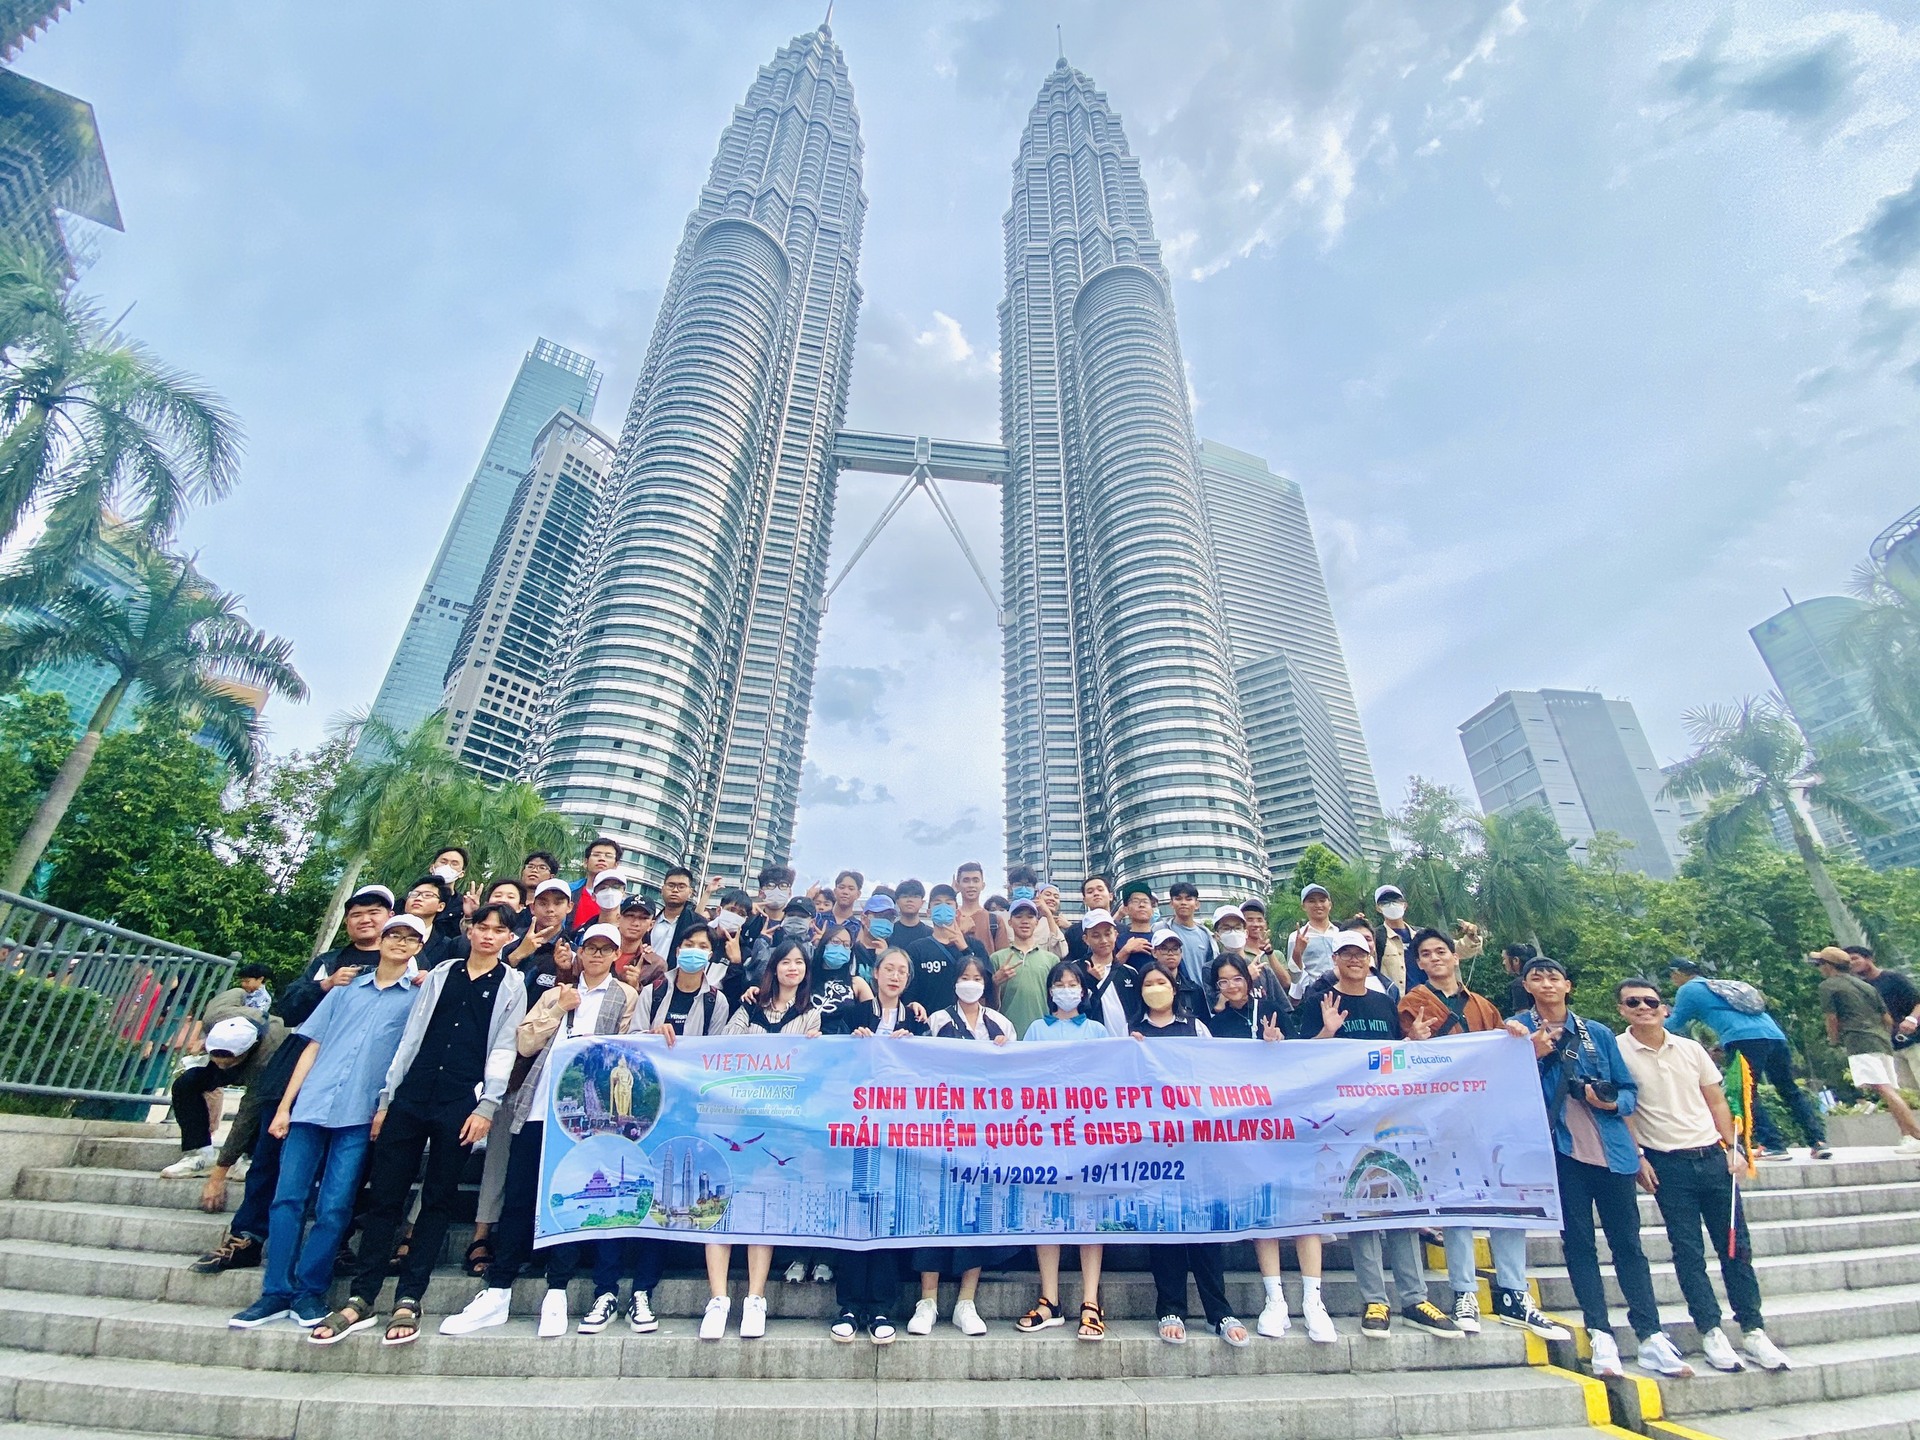 Khởi động chặng đường toàn cầu hoá cho sinh viên Đại học FPT thông qua chuyến trải nghiệm Quốc tế 6N5Đ tại Malaysia